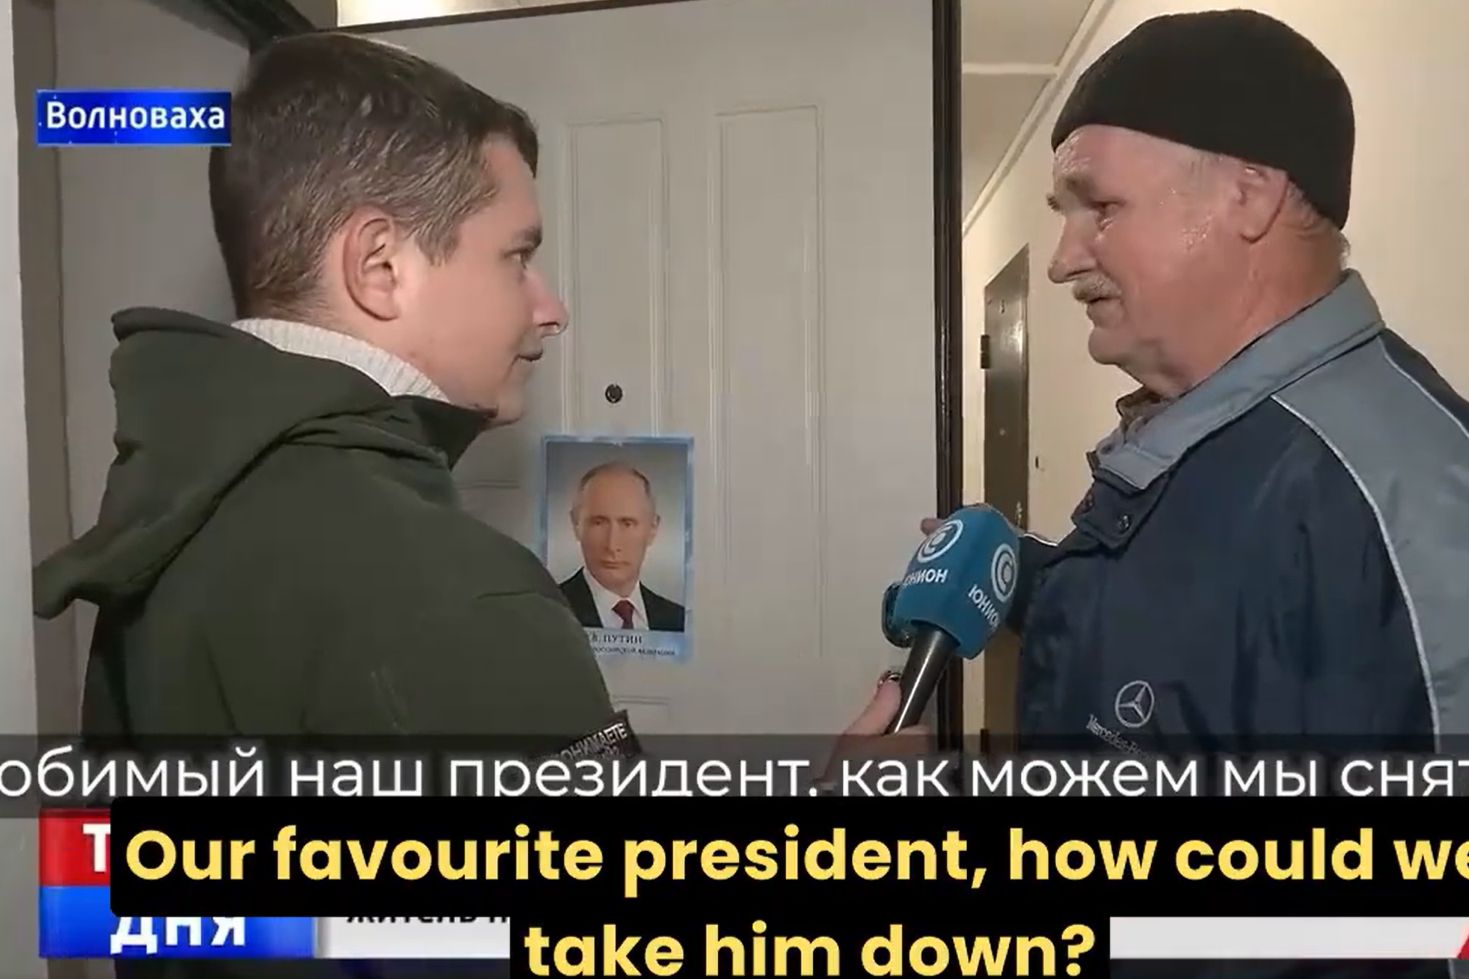 Zniszczyli mu dom, ale jest szczęśliwy. Putin zaprosił go do Rosji